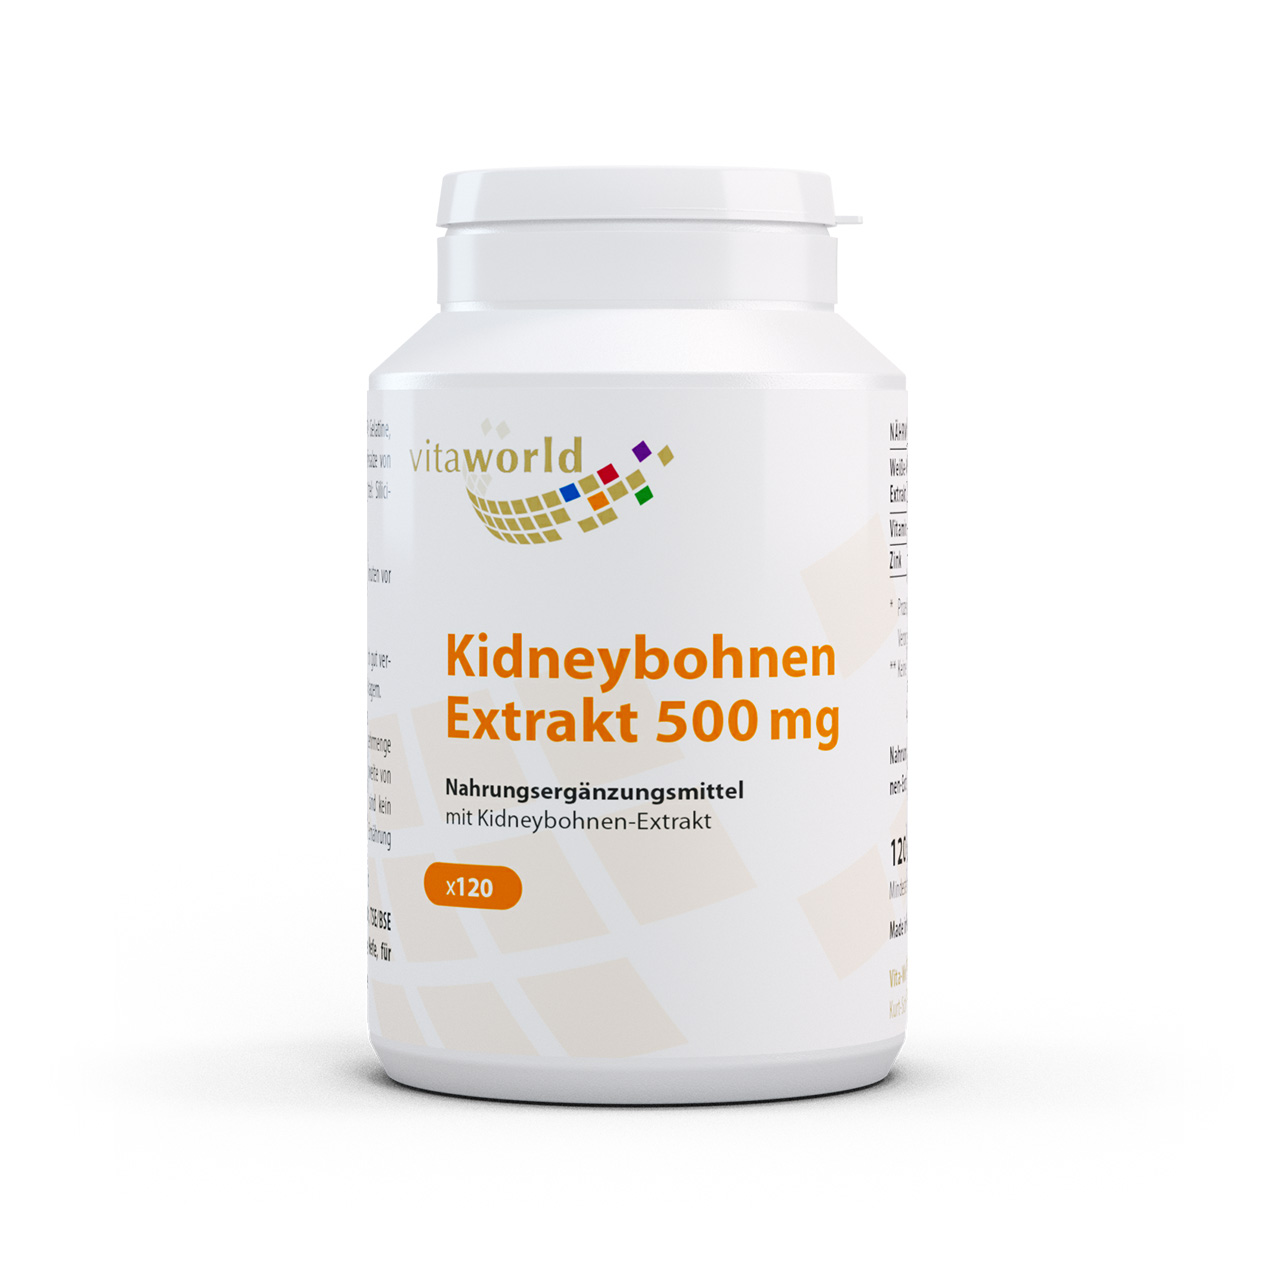 Vita World Kidney Bohnen Extrakt 500 mg | 120 Kapseln | mit Vitamin C und Zink | vegan | gluten- und laktosefrei